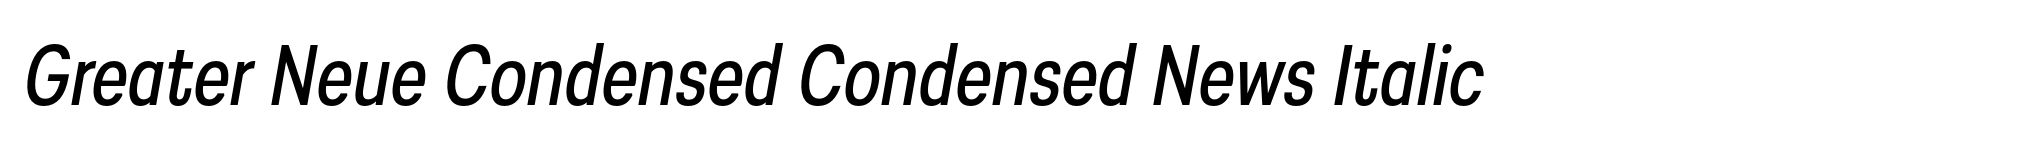 Greater Neue Condensed Condensed News Italic image